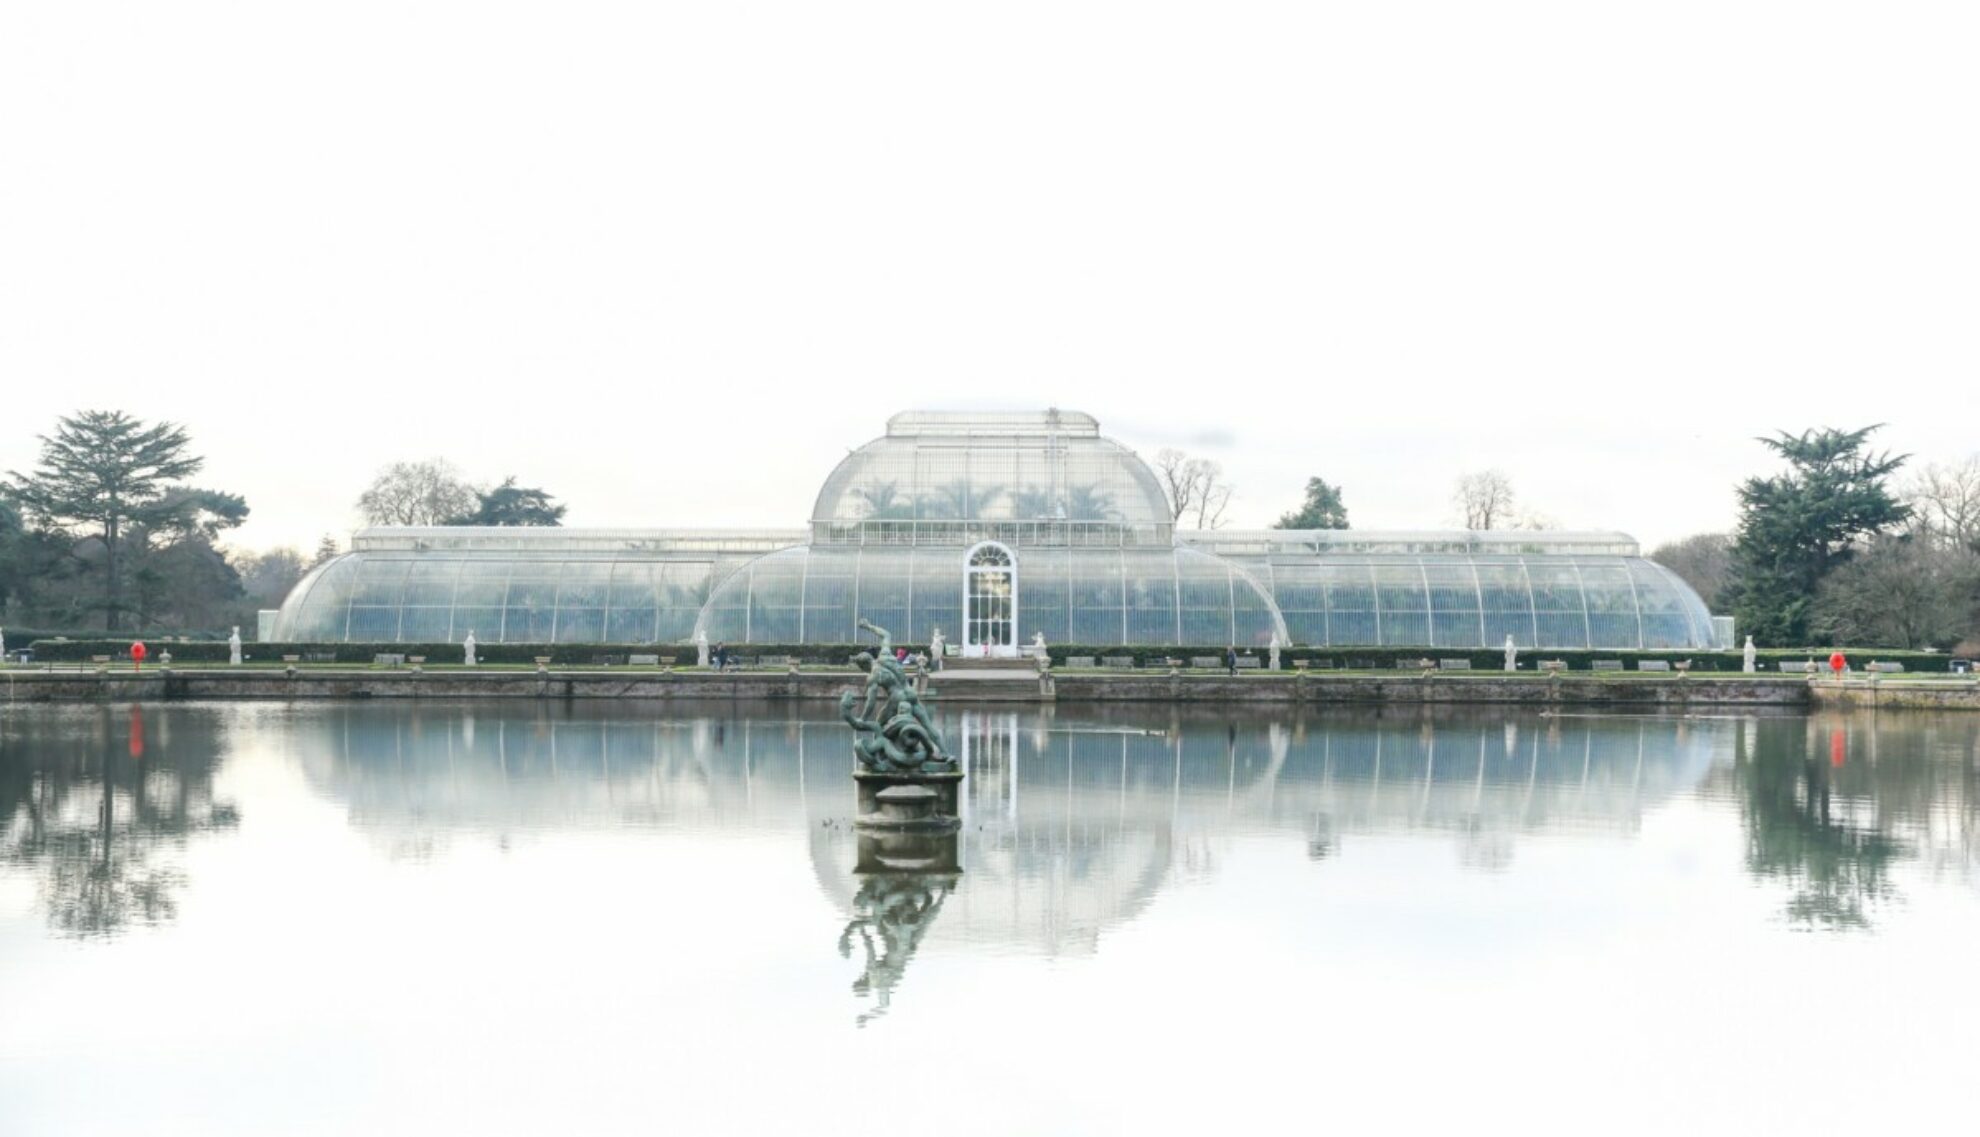 Kew Gardens in South West London